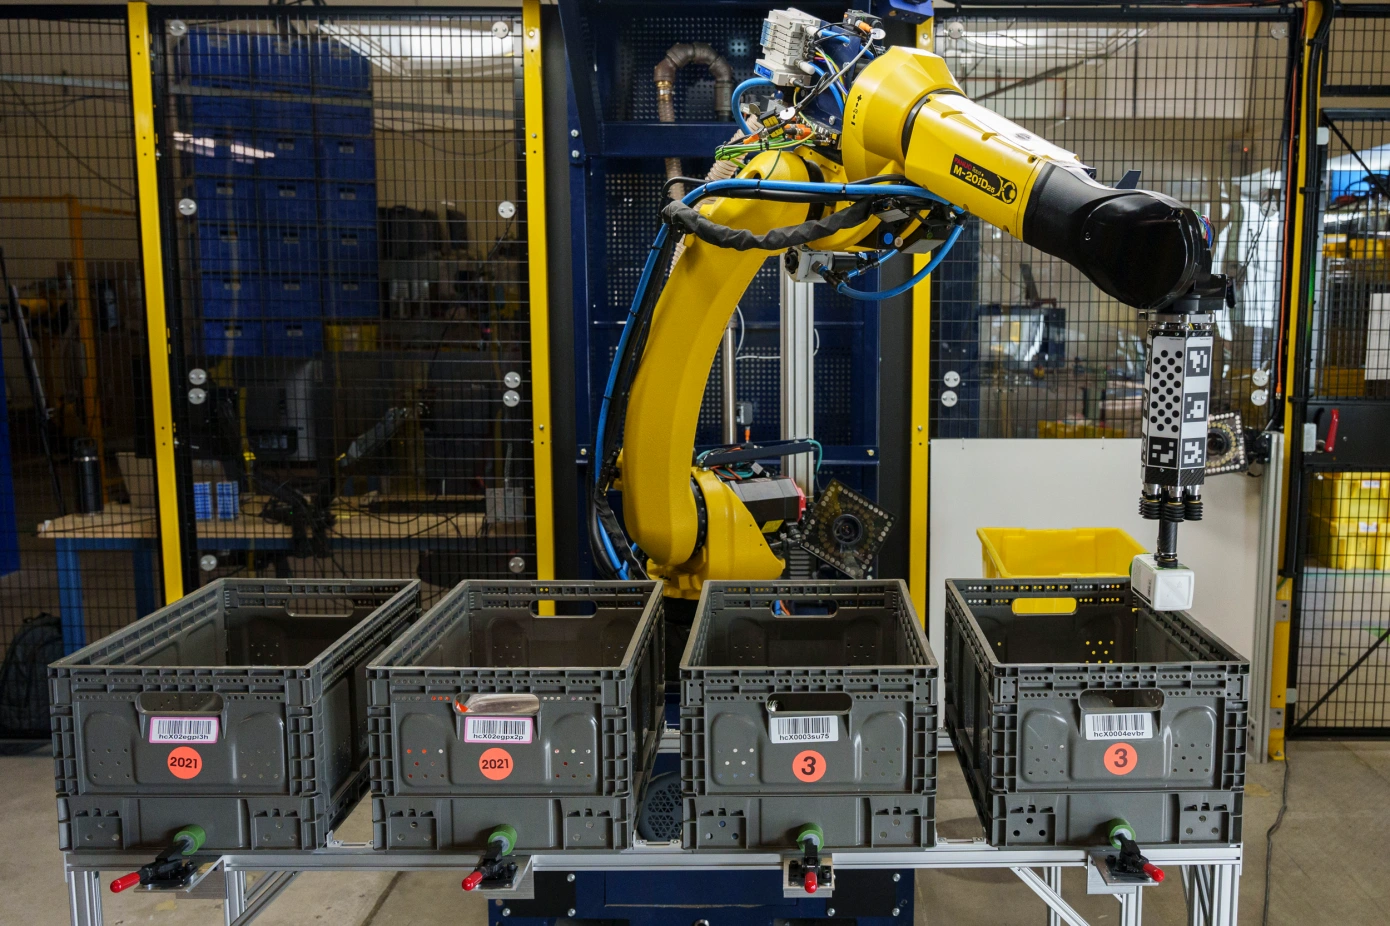 Amazon stellt Sparrow-Roboter vor, der Routinearbeiten in Lagerhäusern erledigen soll